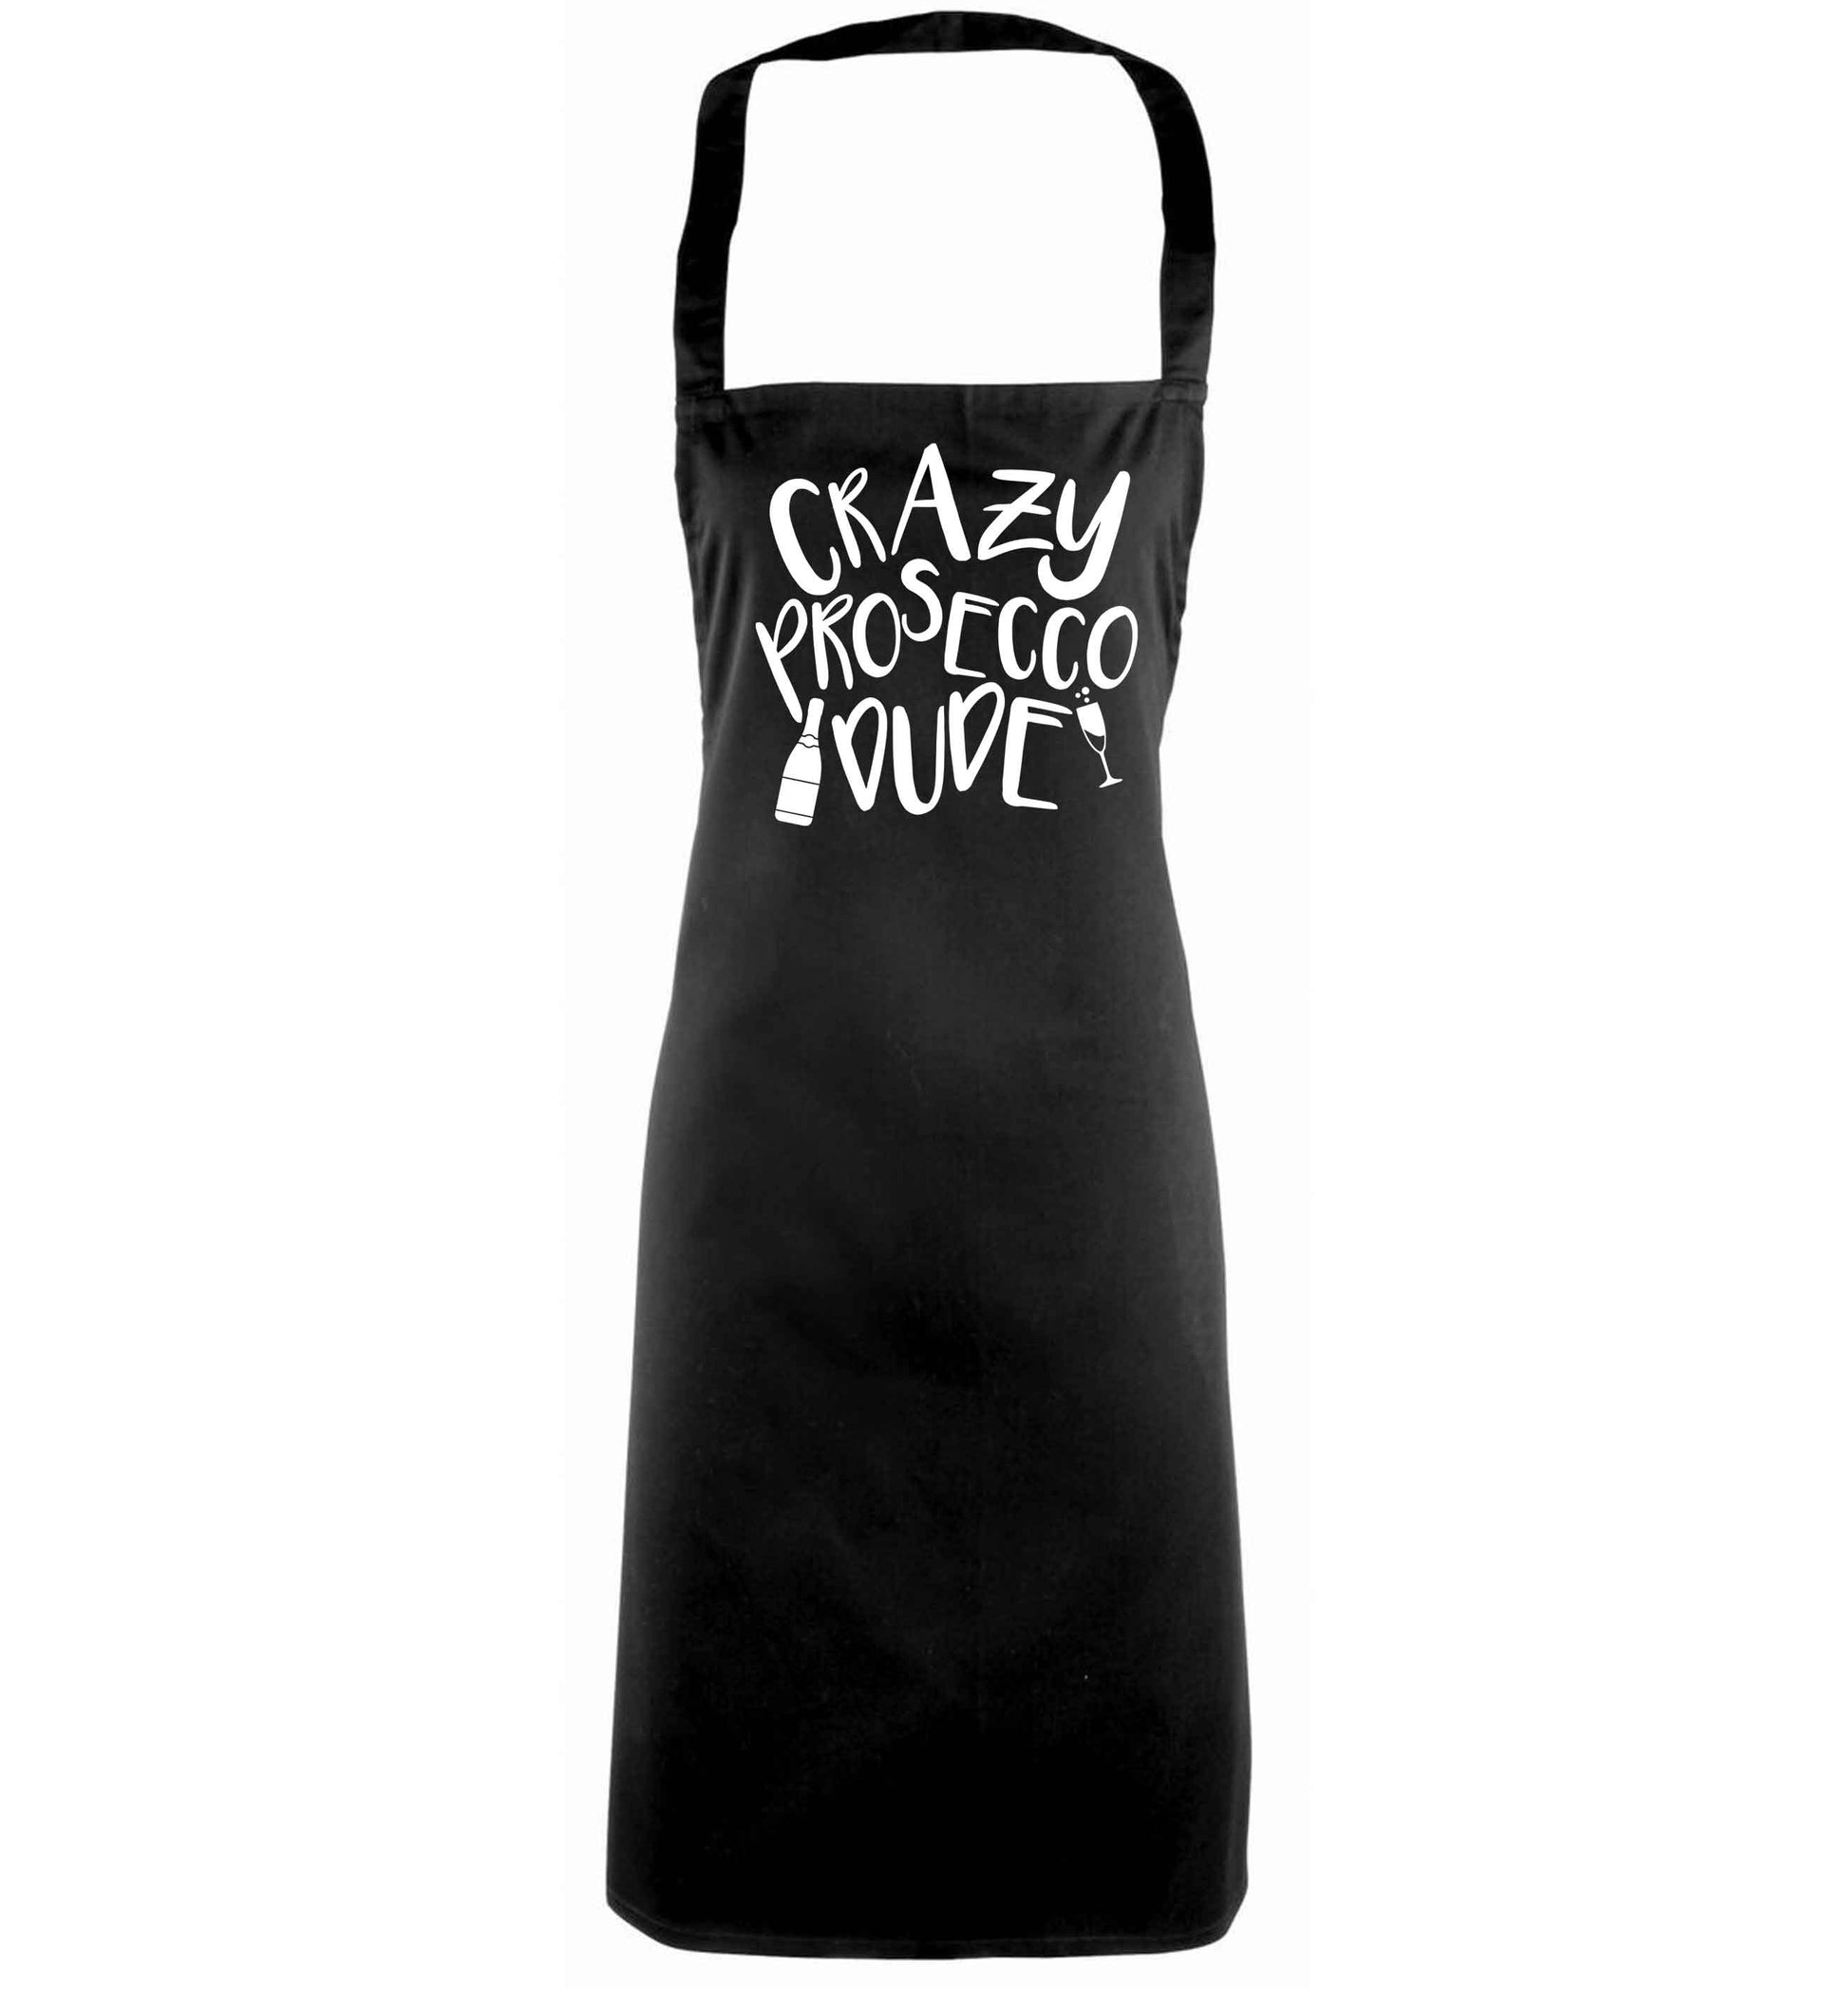 Crazy prosecco dude black apron